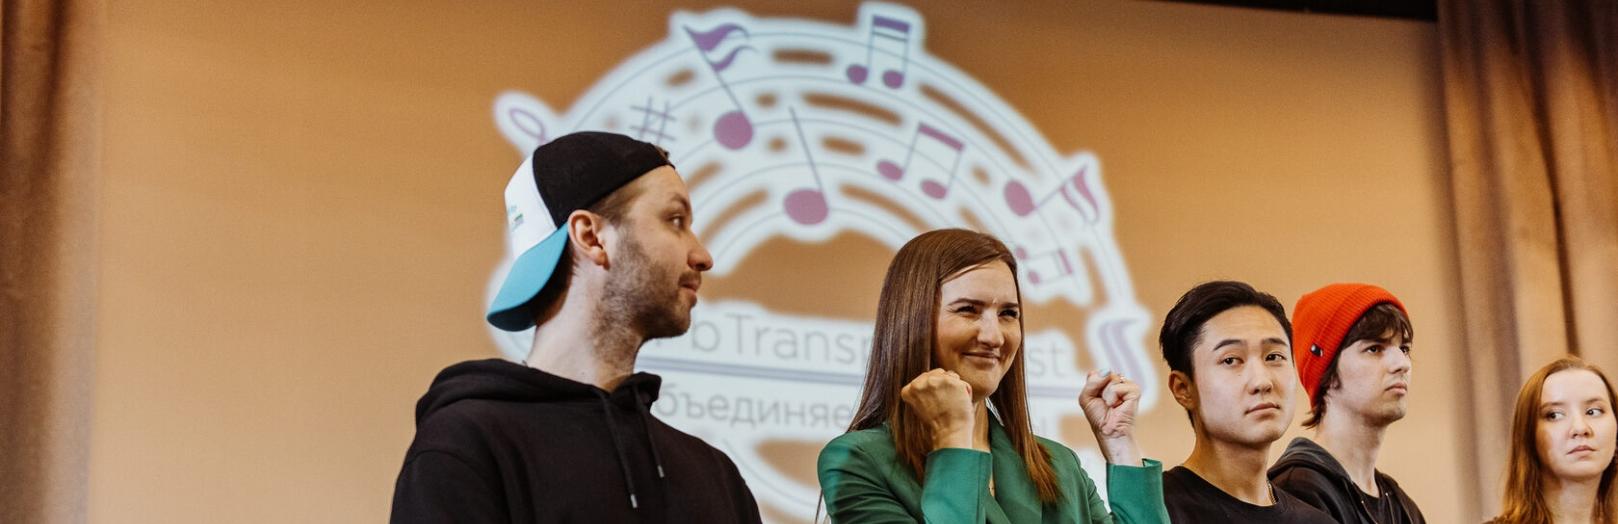 транссексуалы знакомство в санкт-петербурге | знакомства русские в сша